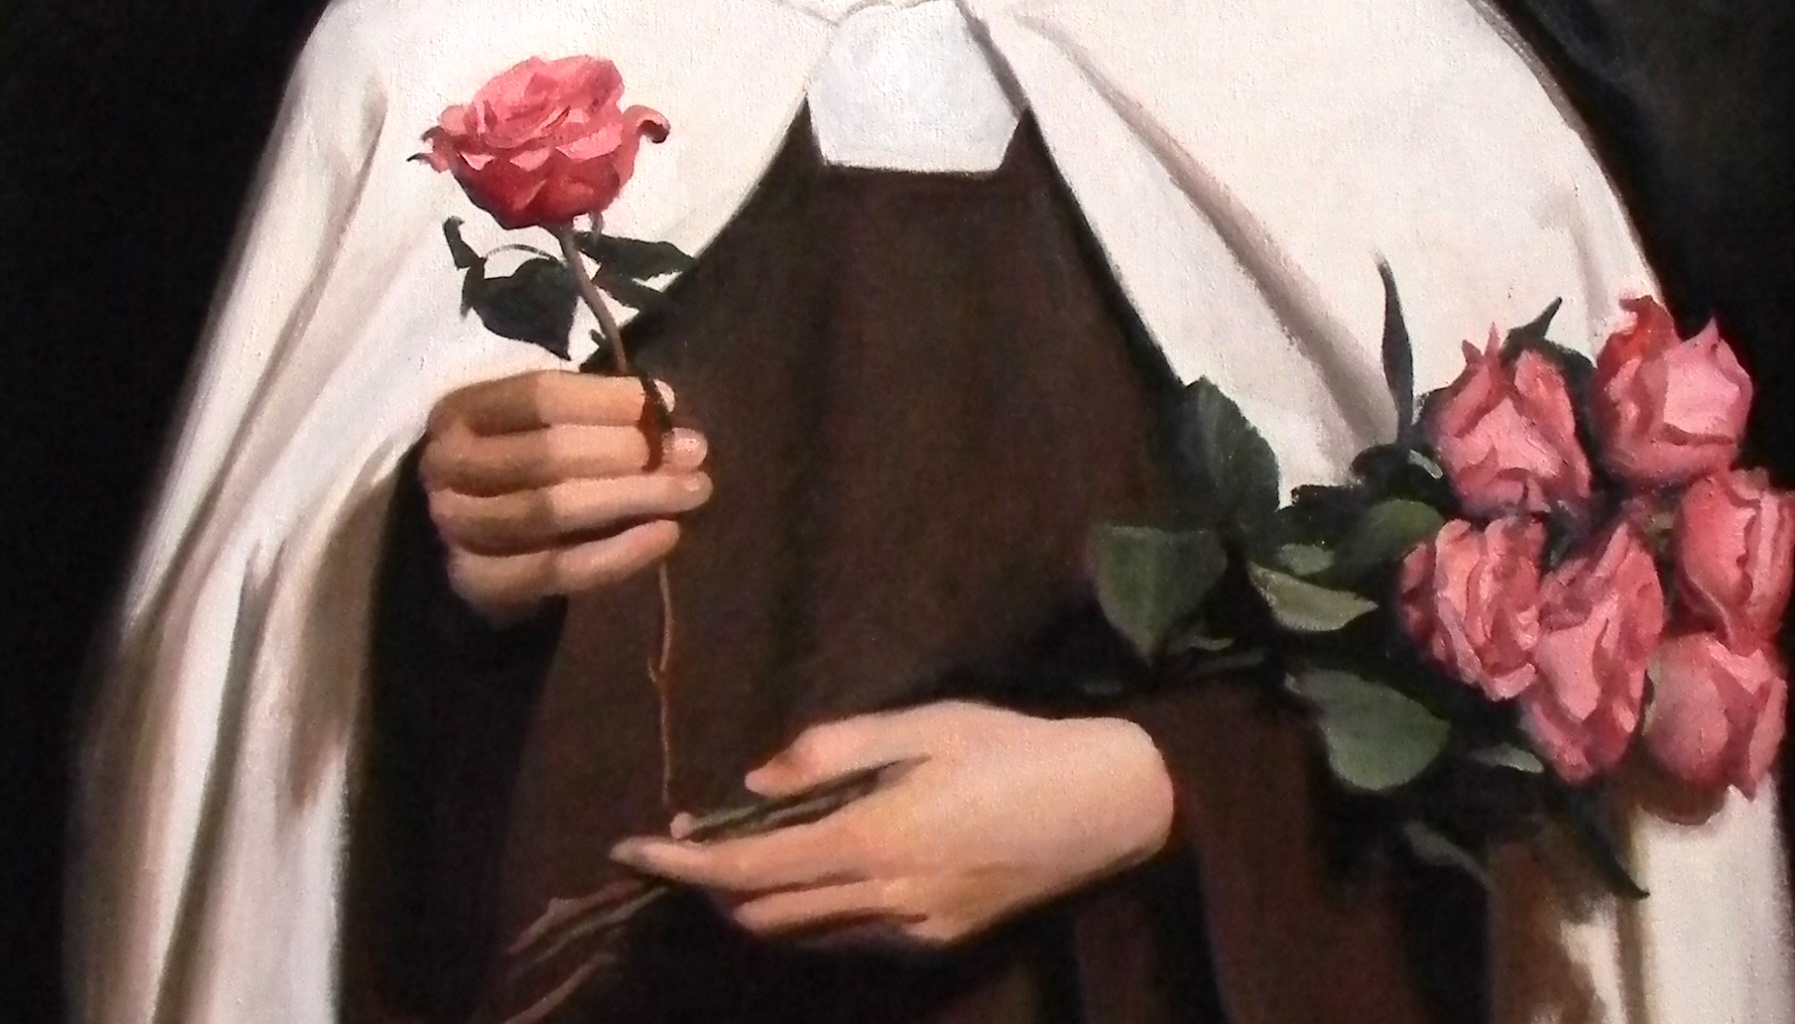 Reconquest Episode 106: The 'Little Way' of Saint Thérèse. Guest: Sister Marie Gabrielle